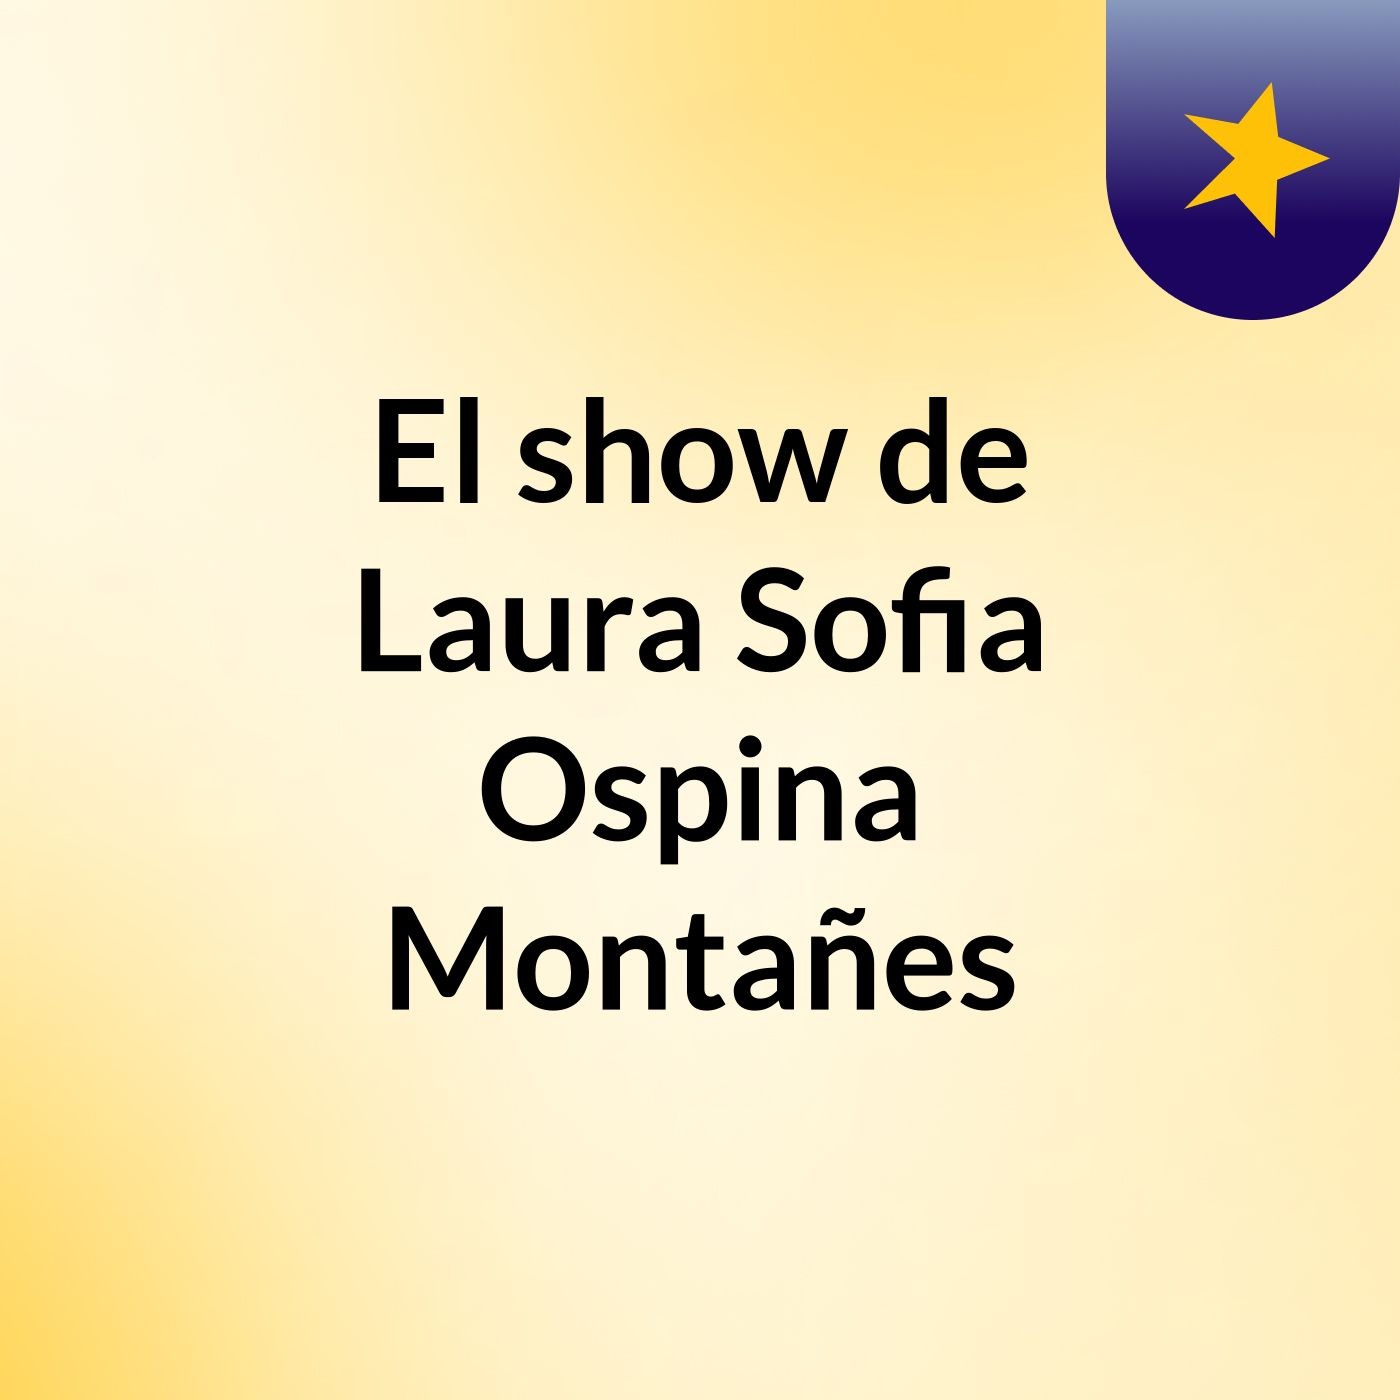 El show de Laura Sofia Ospina Montañes